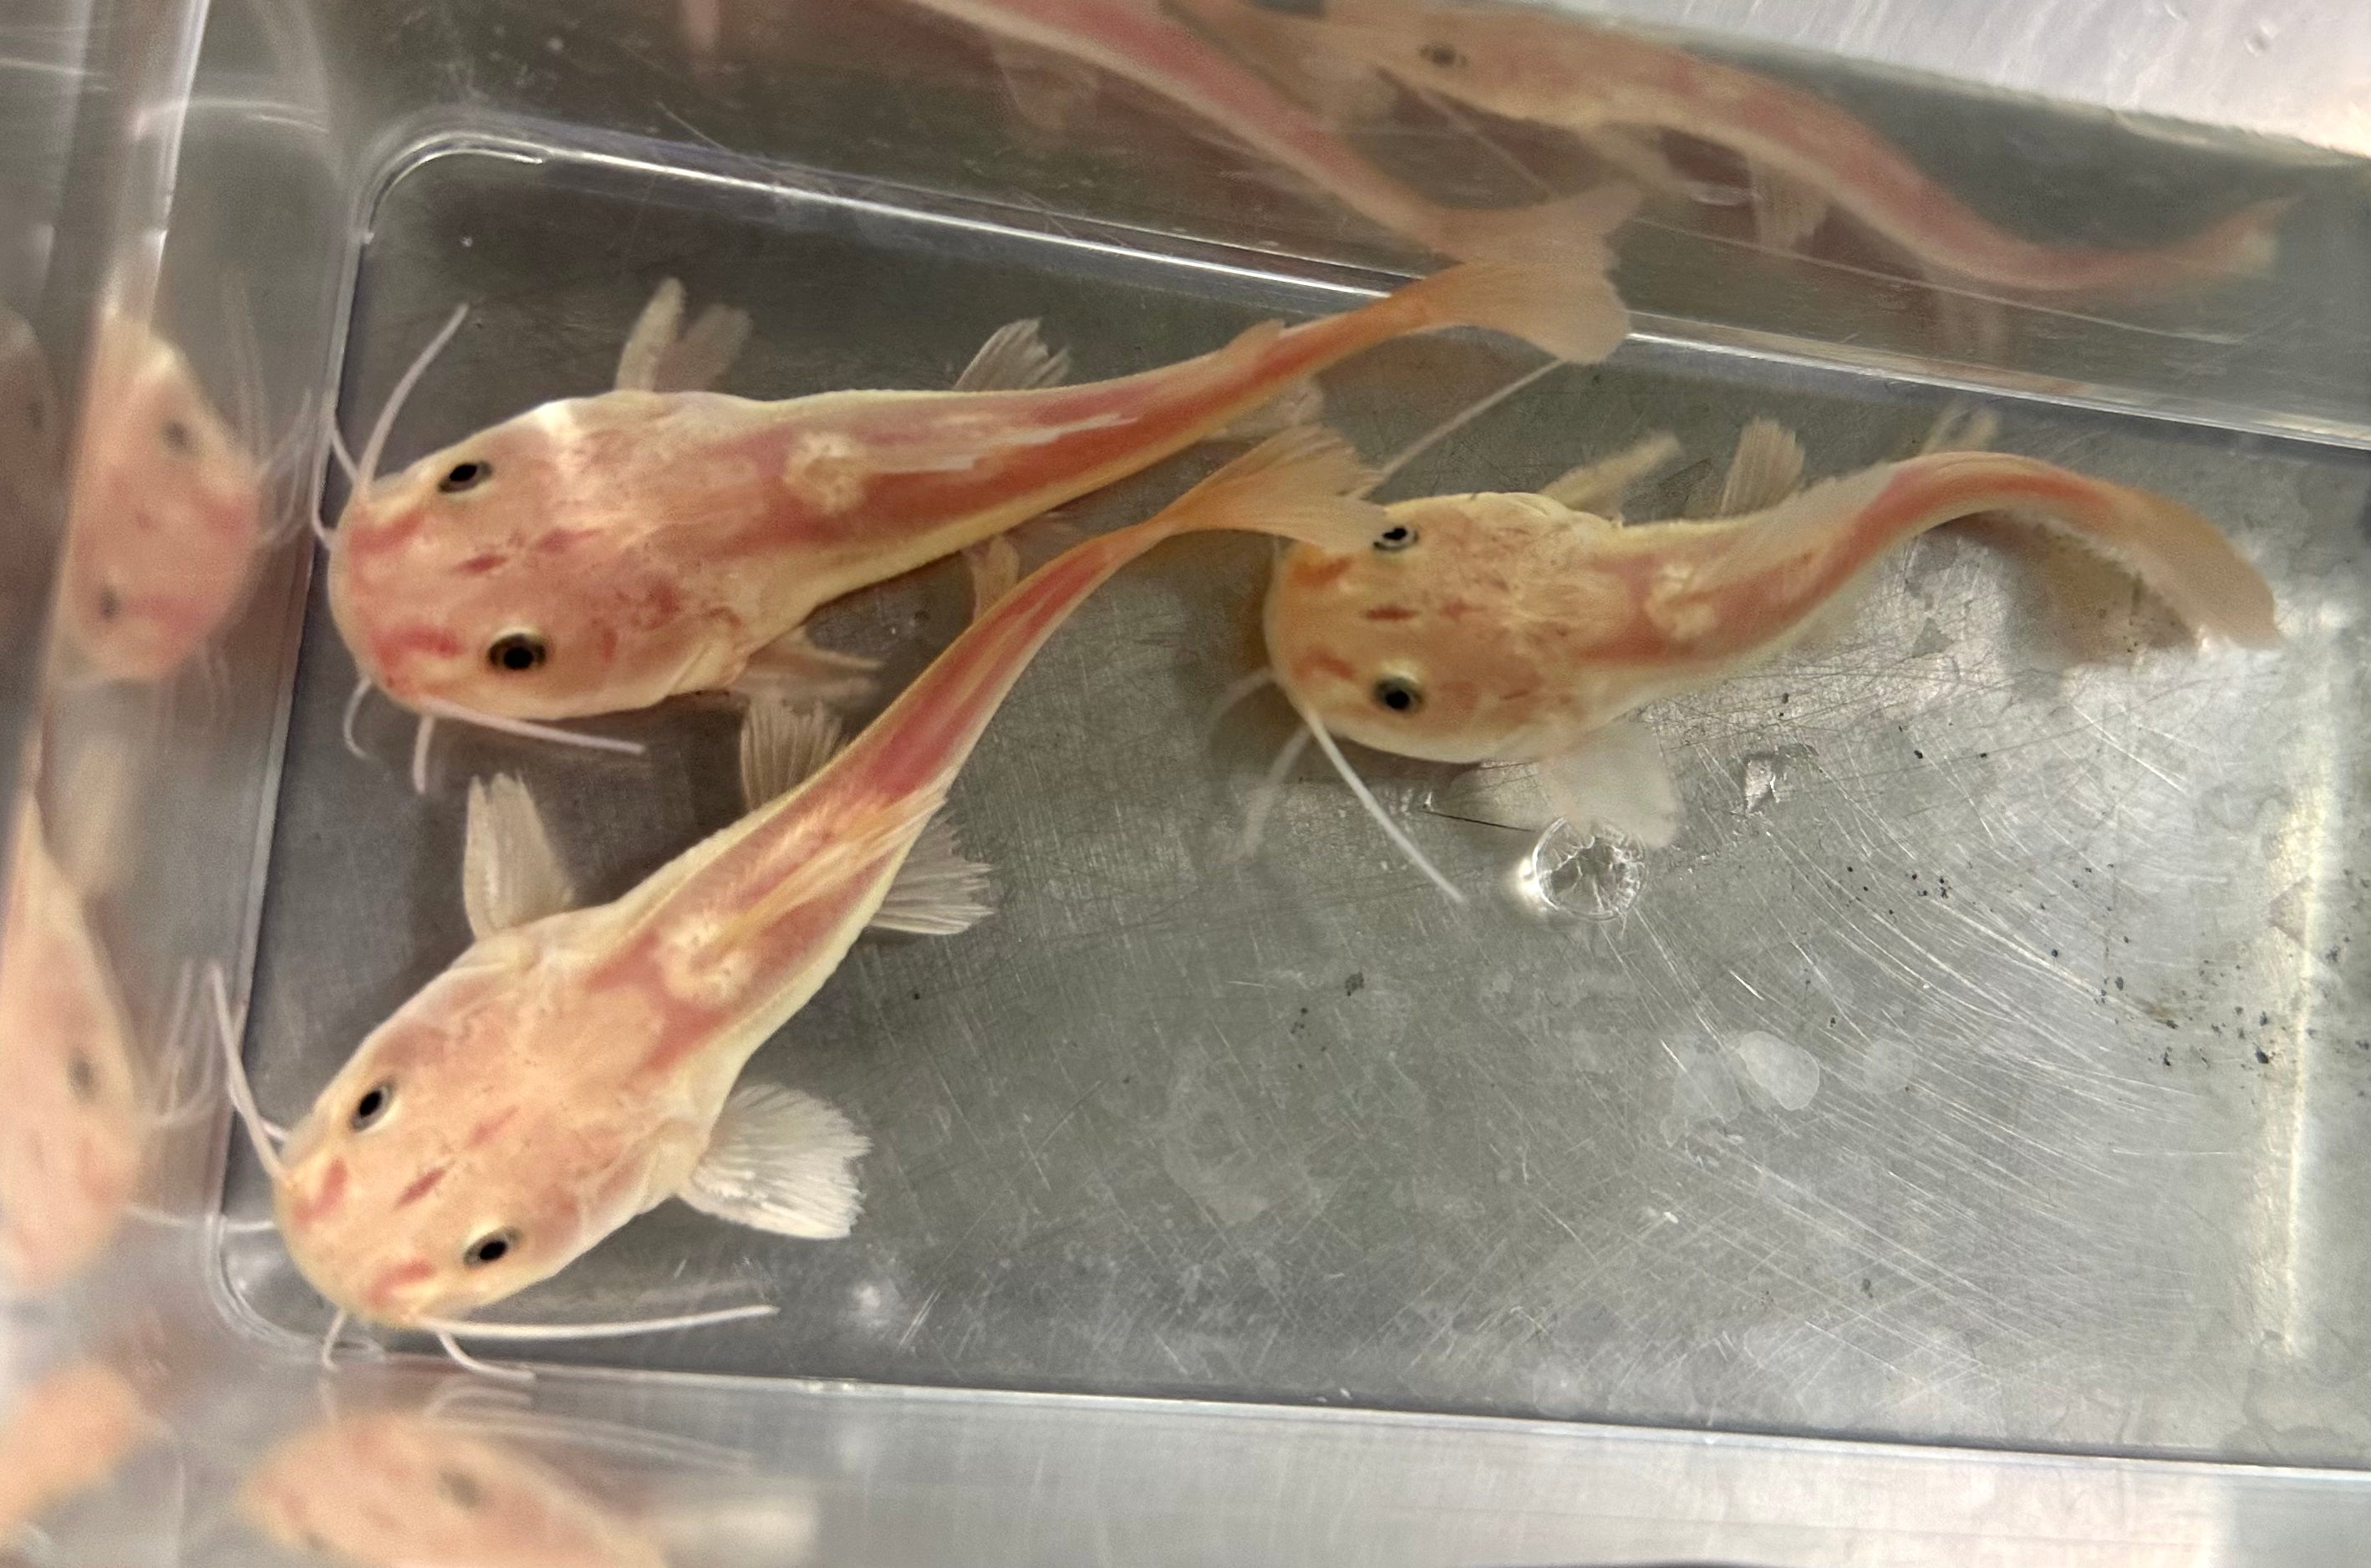 Phantom Redtail Catfish (2.5-3”)